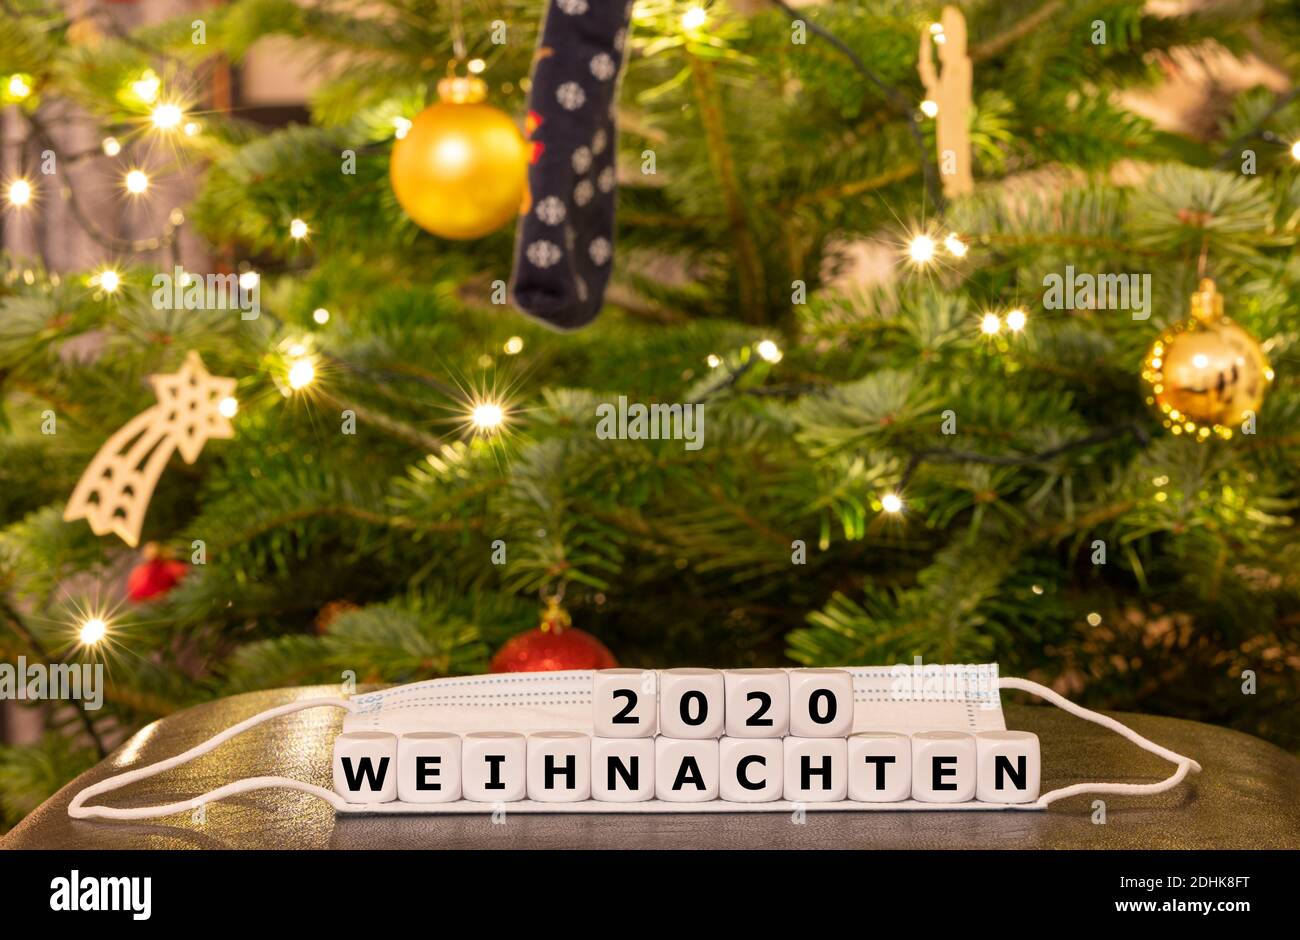 Simbolo del periodo natalizio durante la pandemia della corona. I dadi formano l'espressione tedesca 'Weihnachten 2020' (Natale 2020) sopra una maschera di faccia in Foto Stock